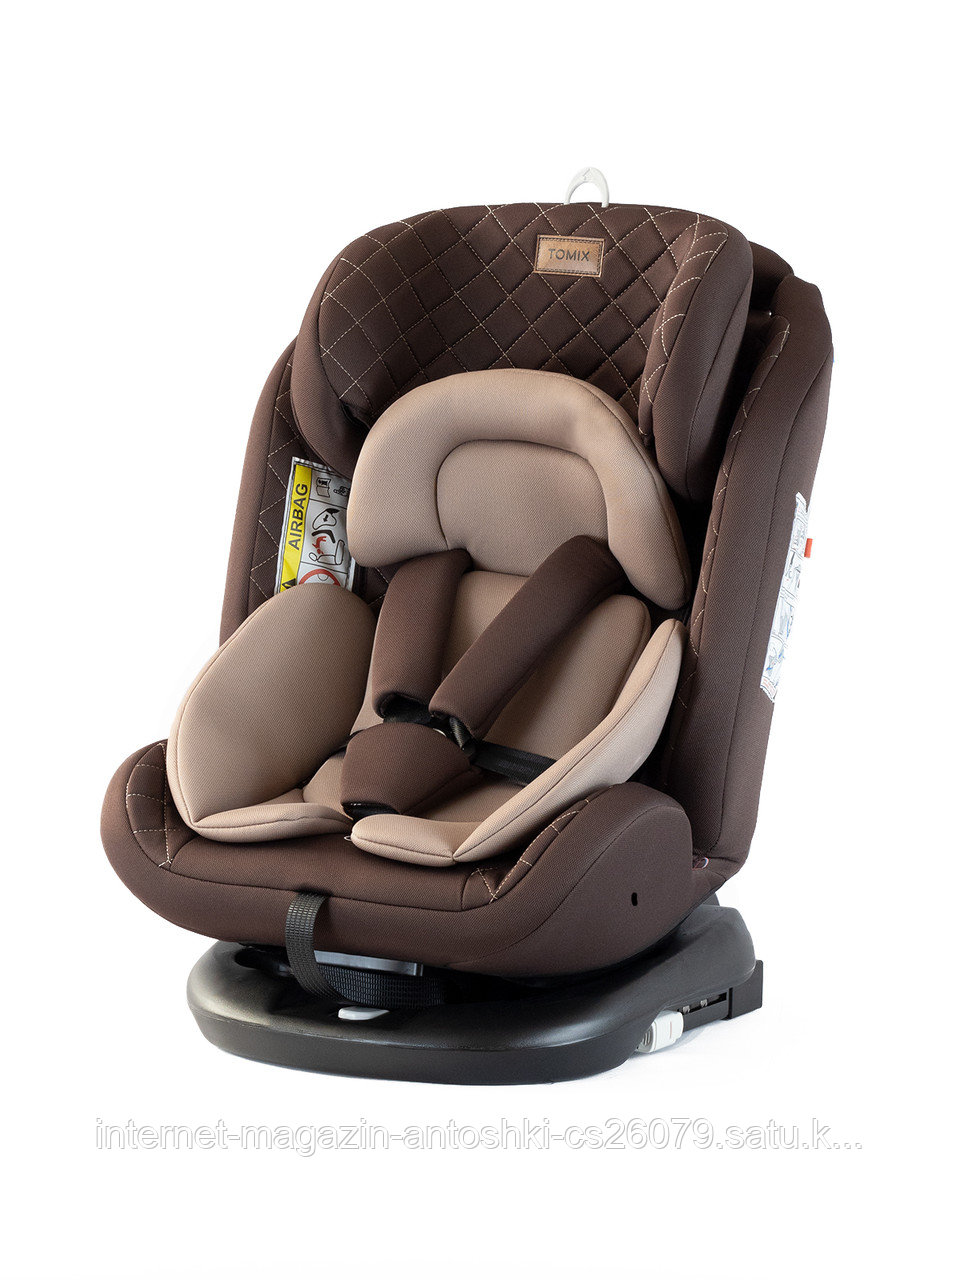 Детское автомобильное кресло Tomix "Major ISOFIX", (коричневый), (0+1/2/3, 0-36 кг), система плавного вращения